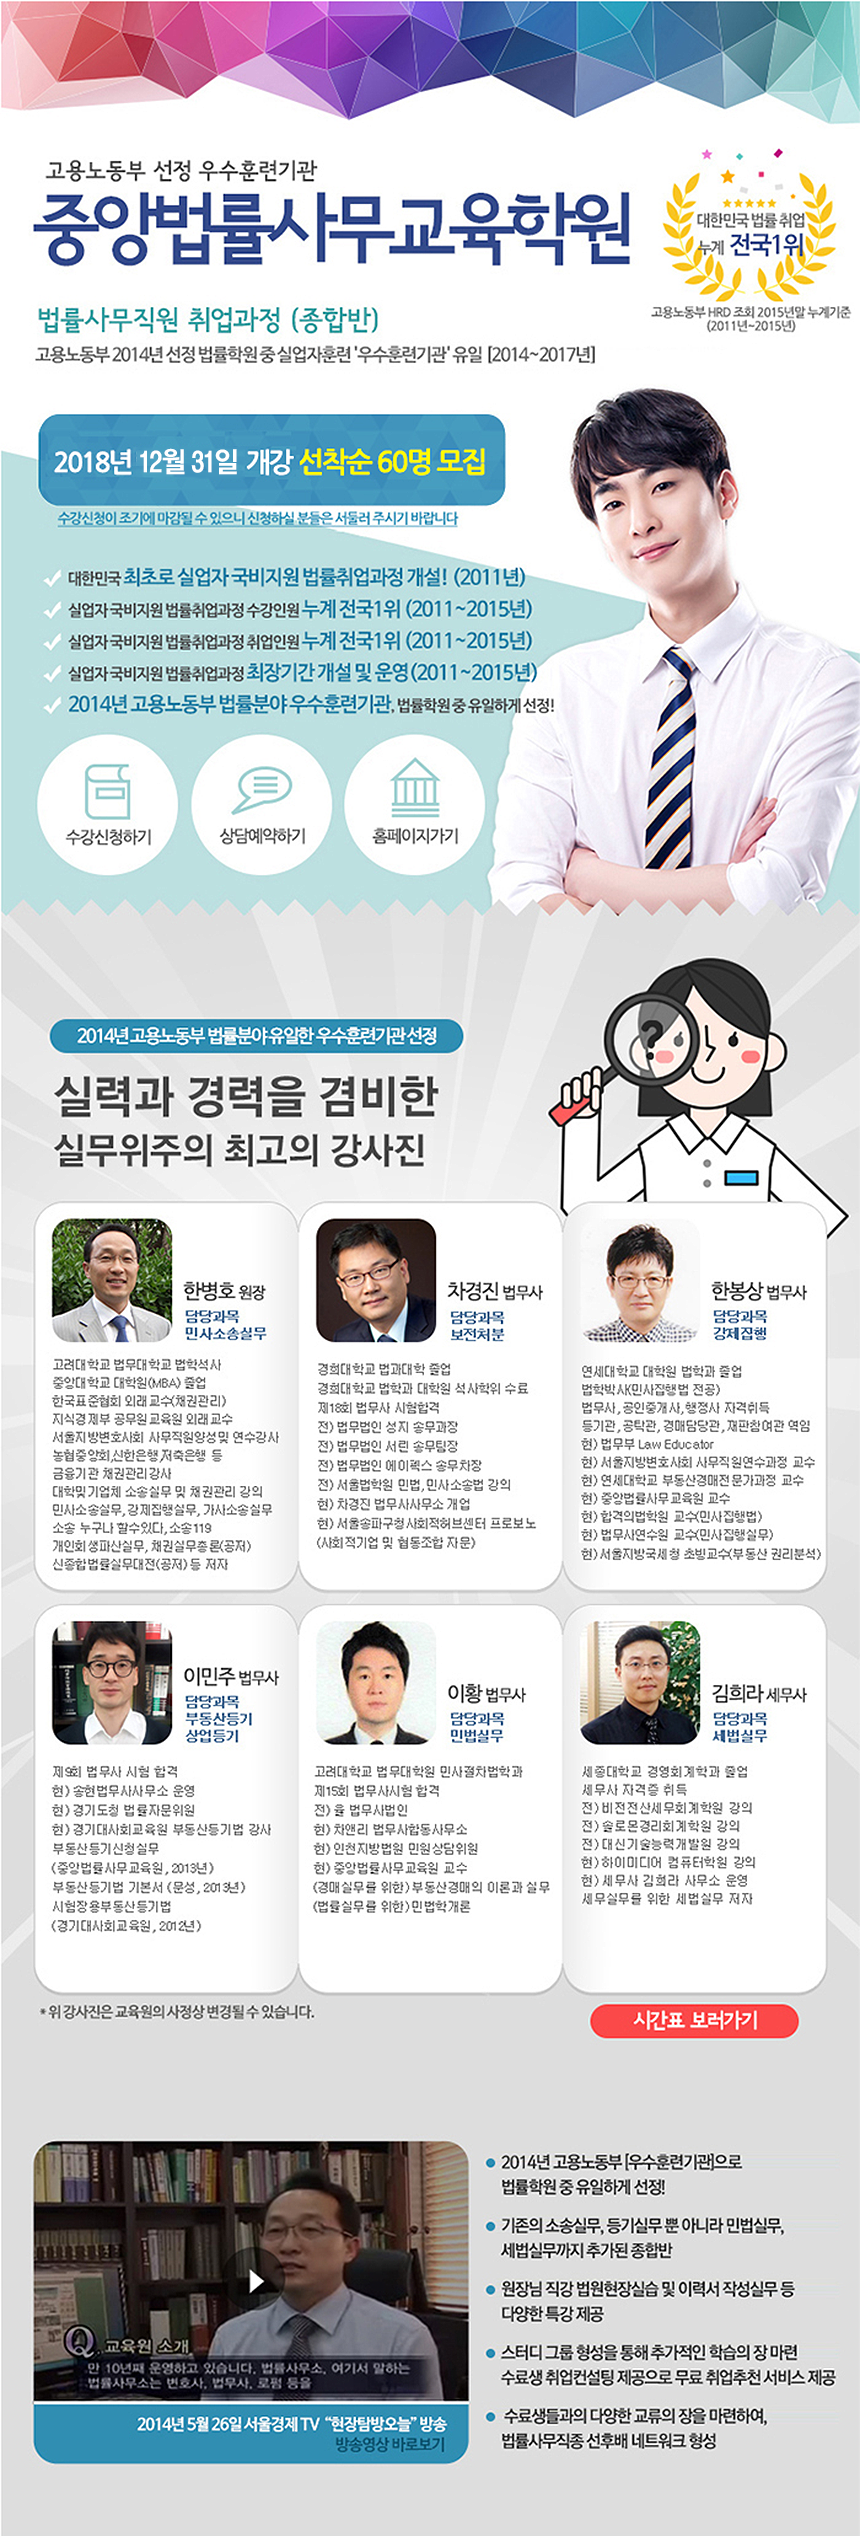 2018 한솔교육 경력사원 공개 채용